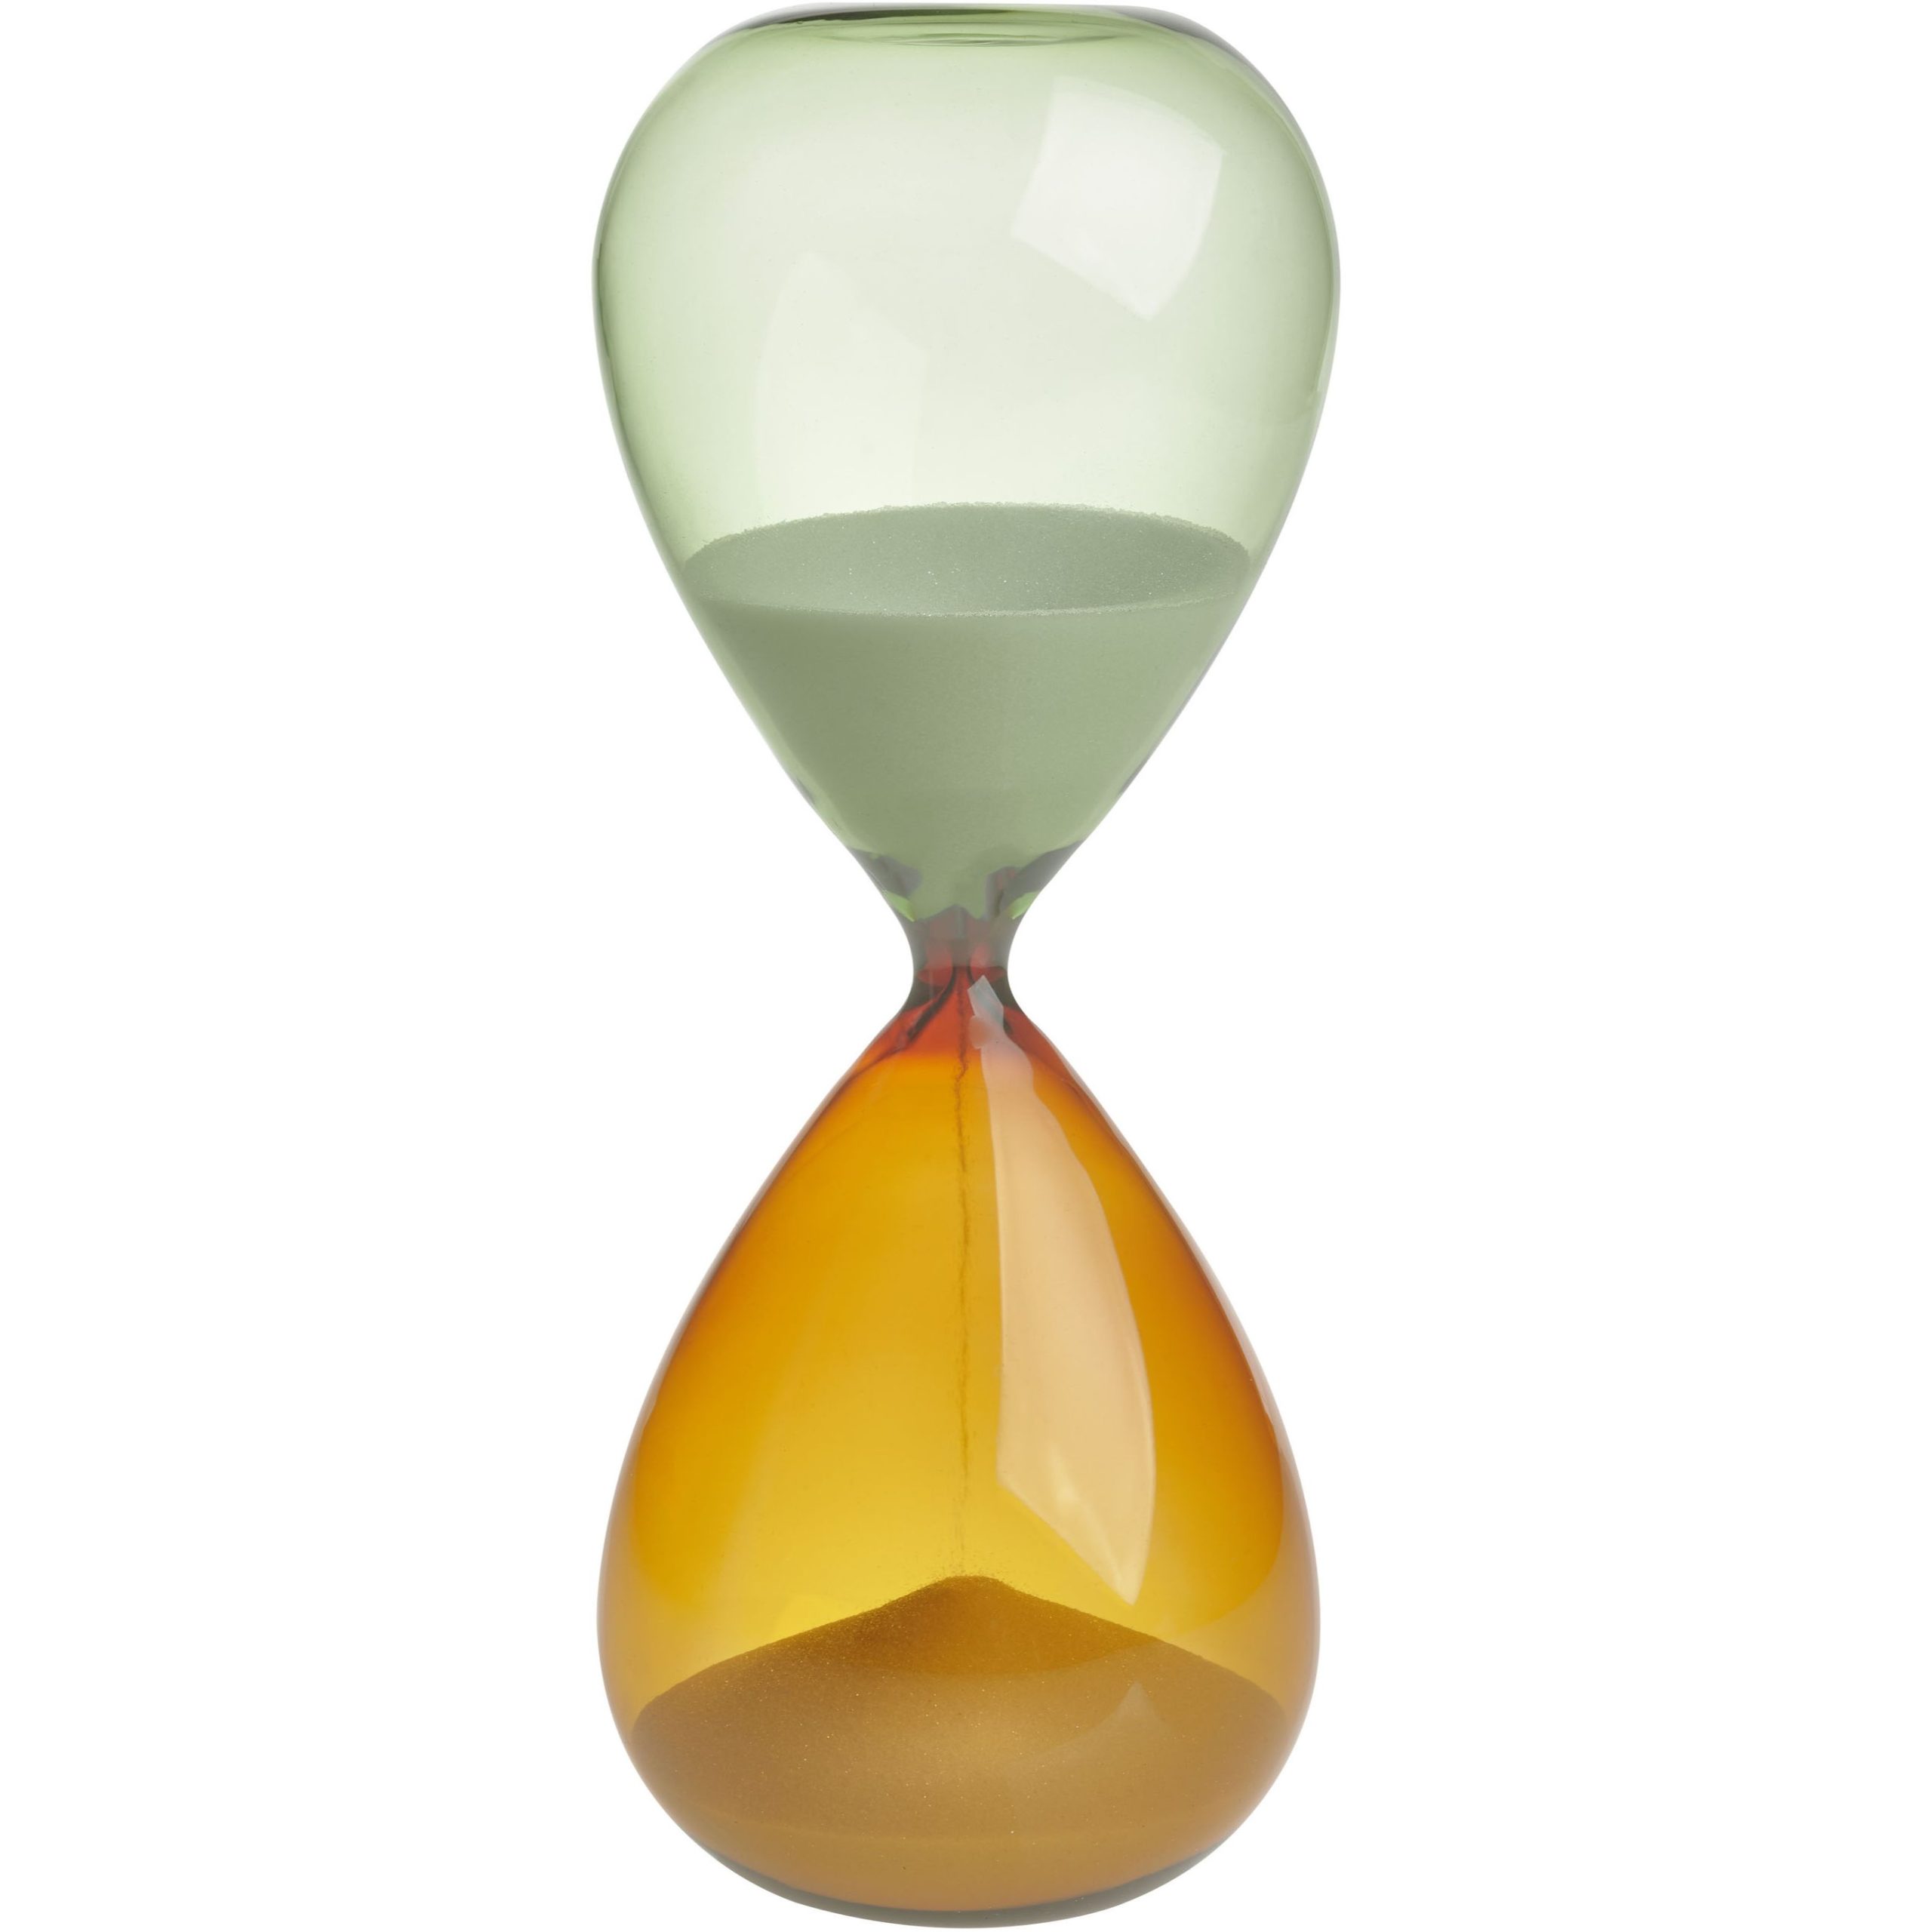 Песочные часы TFA (1860100241), 30 минут, таймер, белый песок, оранжево-зеленое стекло, 23 x 9 см